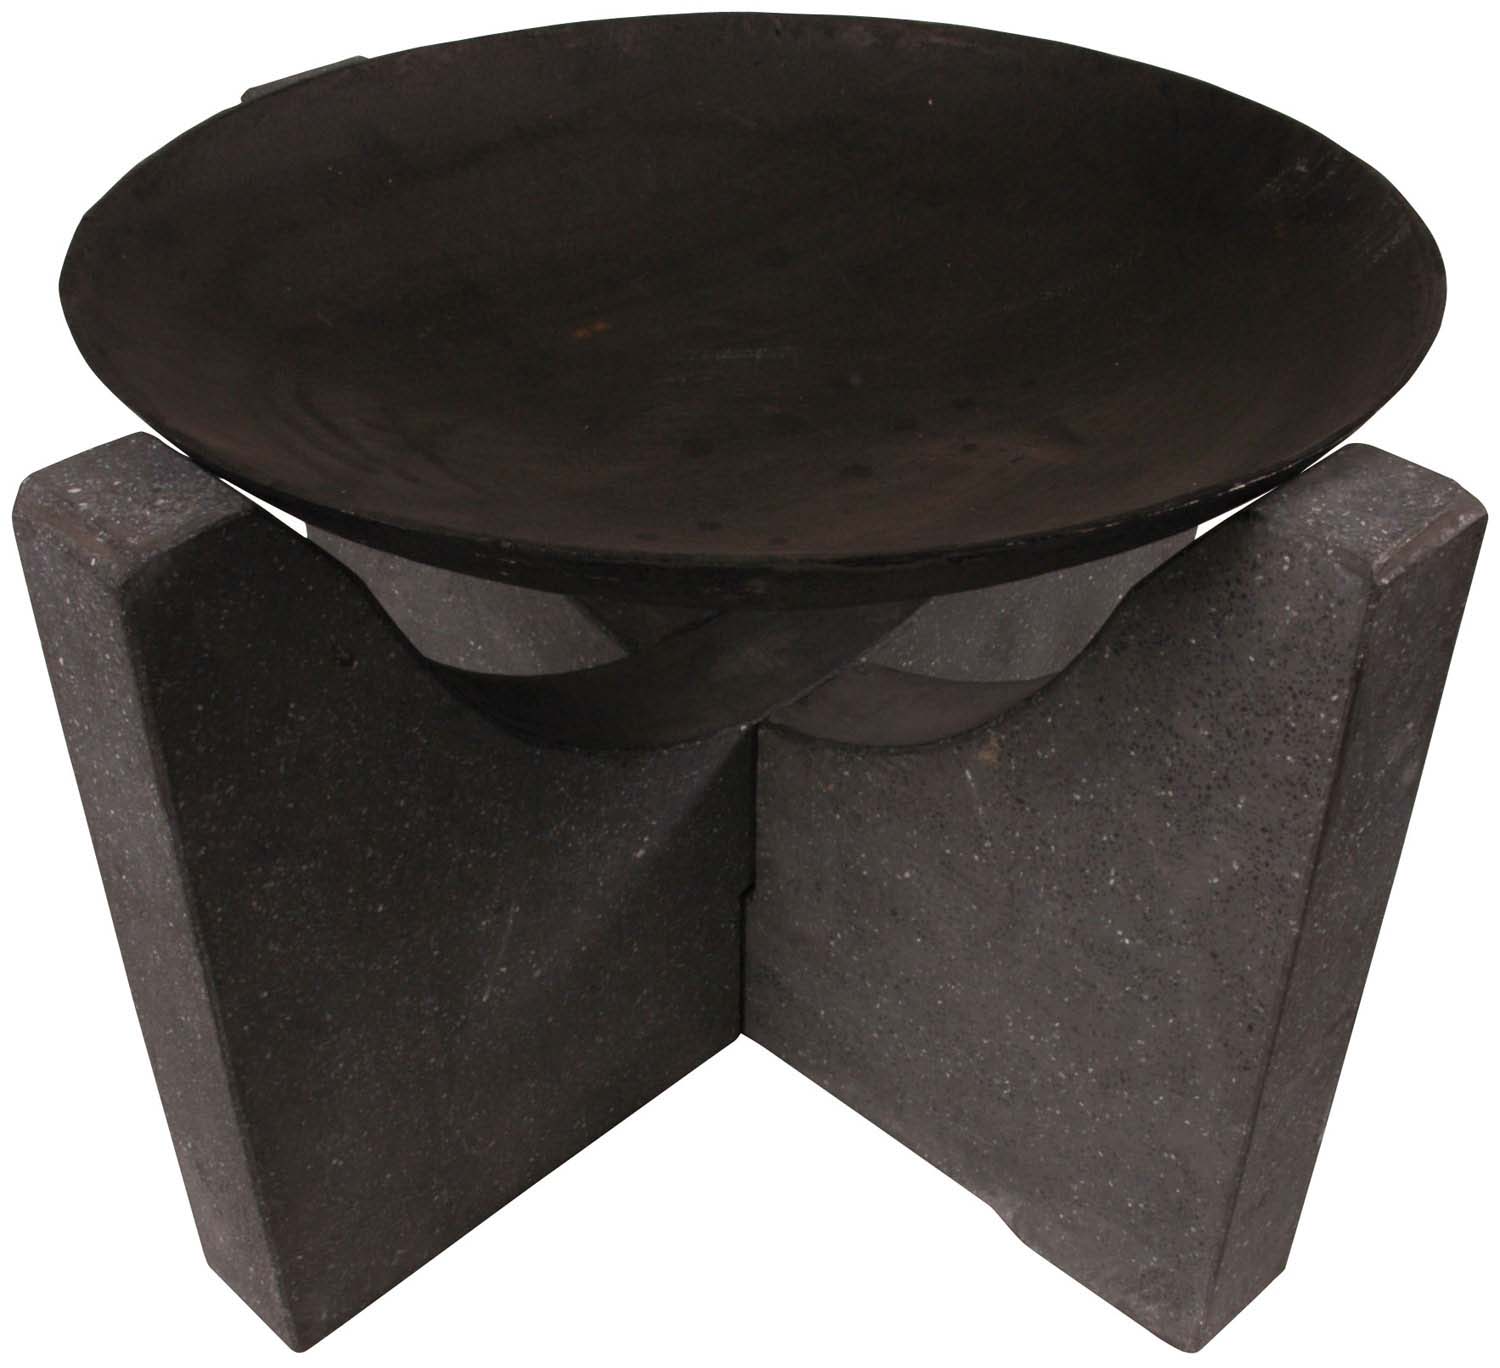 Feuerschale Granito, Ø 58 cm, schwarz Granit